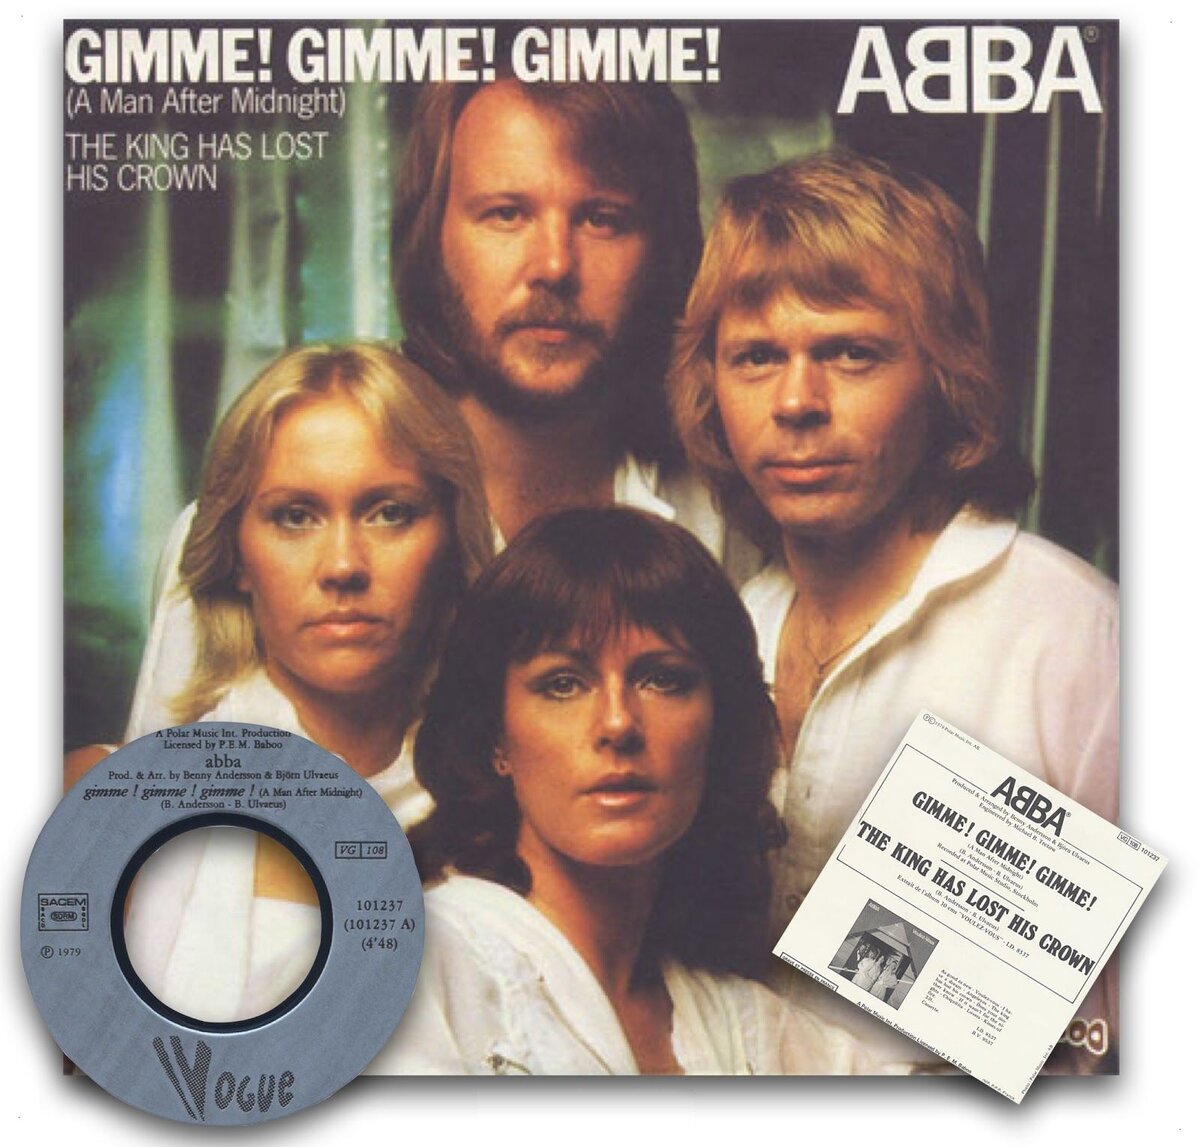 Песня abba gimme gimme gimme. ABBA Gimme обложка. ABBA A man after Midnight. ABBA Gimme Gimme Gimme. ABBA - Gimme! Gimme! Gimme! (A man after Midnight).